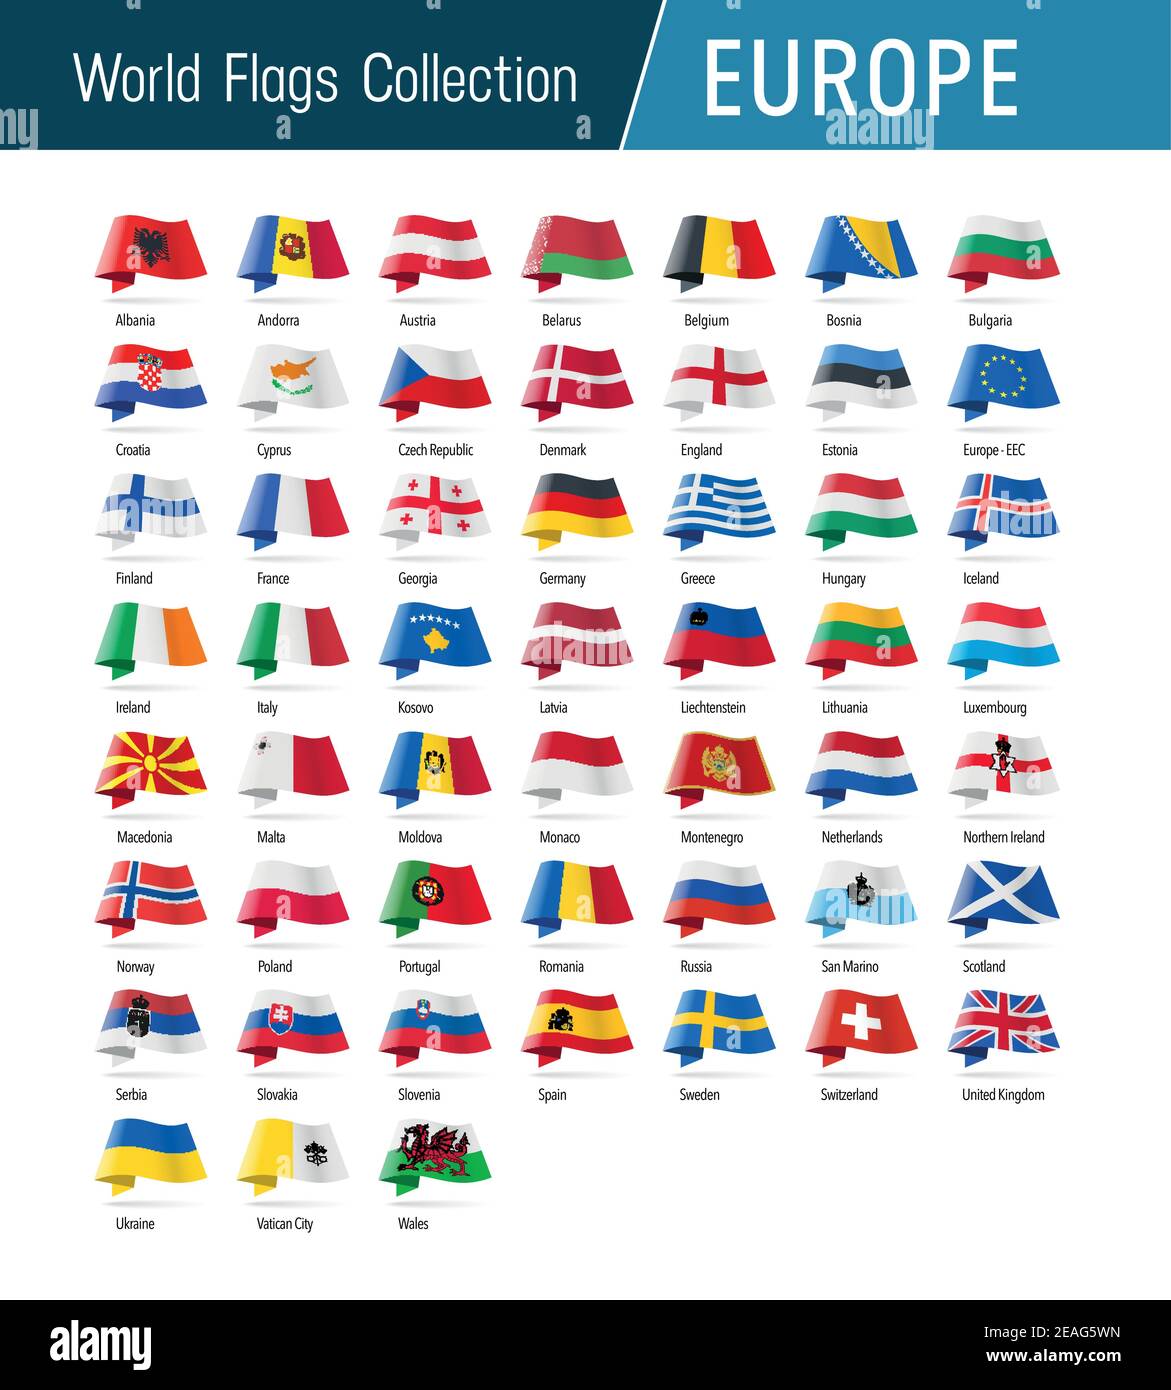 Flaggen von Europa, winken im Wind. Symbole, die auf Position, Herkunft und Sprache verweisen. Vector Welt Flaggen Kollektion. Stock Vektor